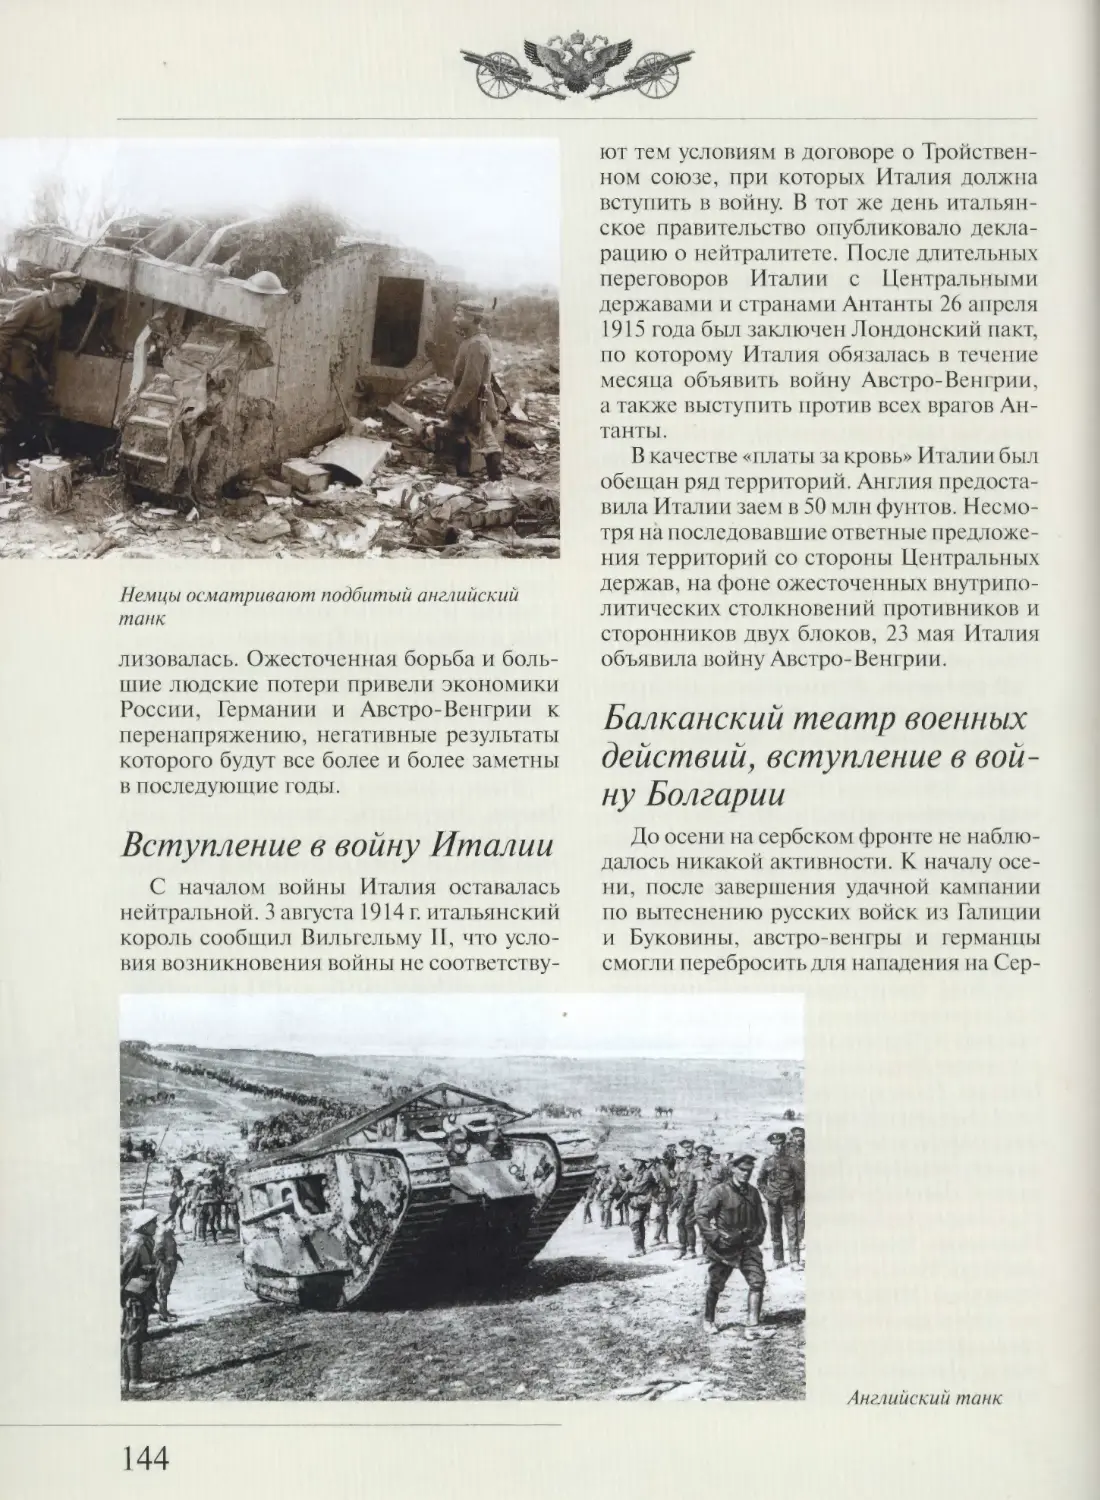 Вступление в войну Италии
Балканский театр военных действий, вступление в войну Болгарии